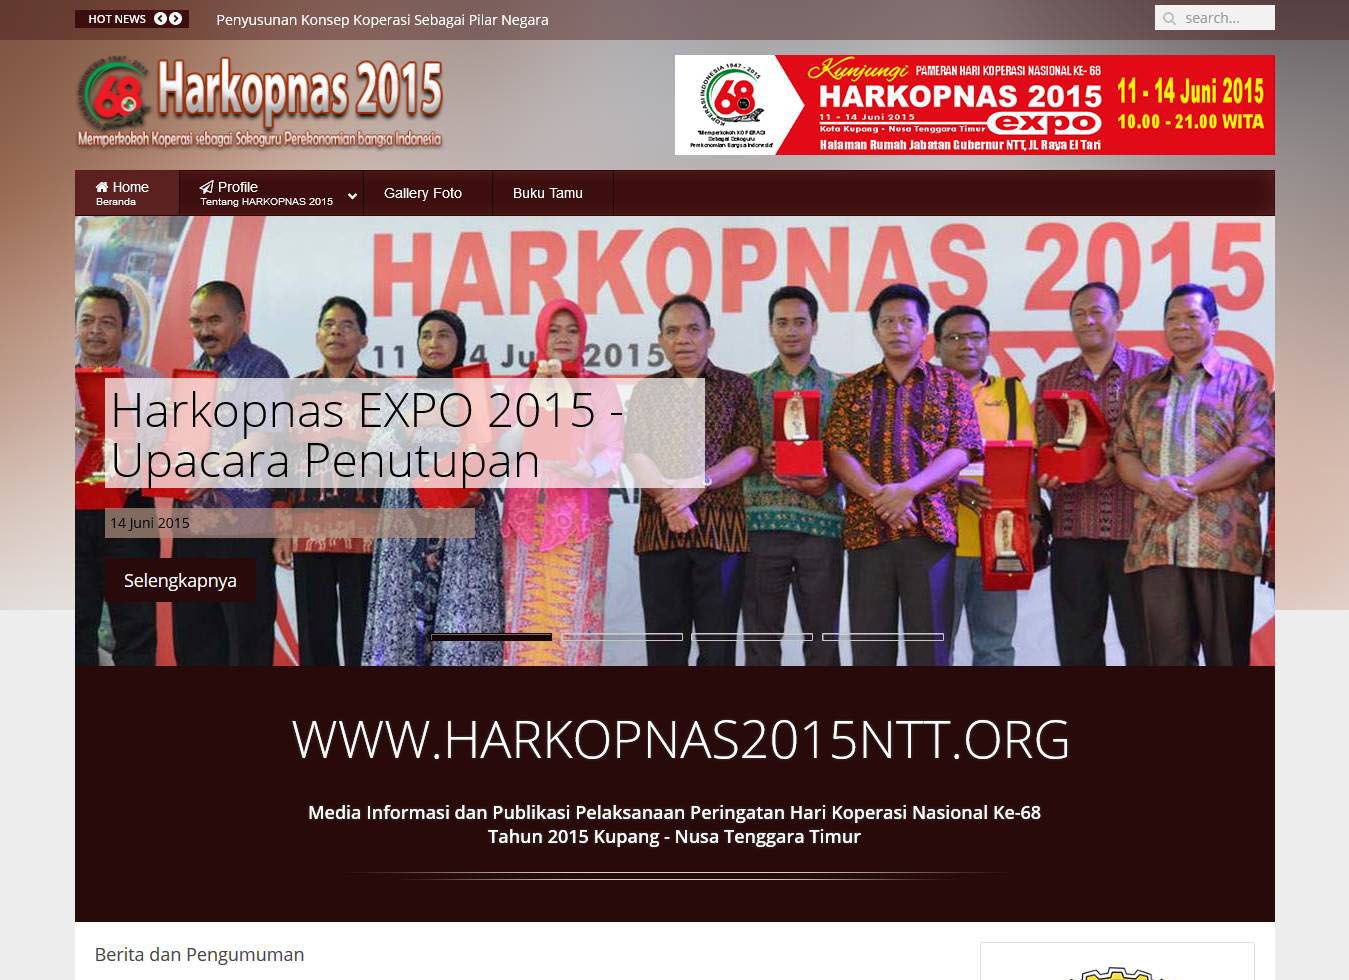 Harkopnas 2015